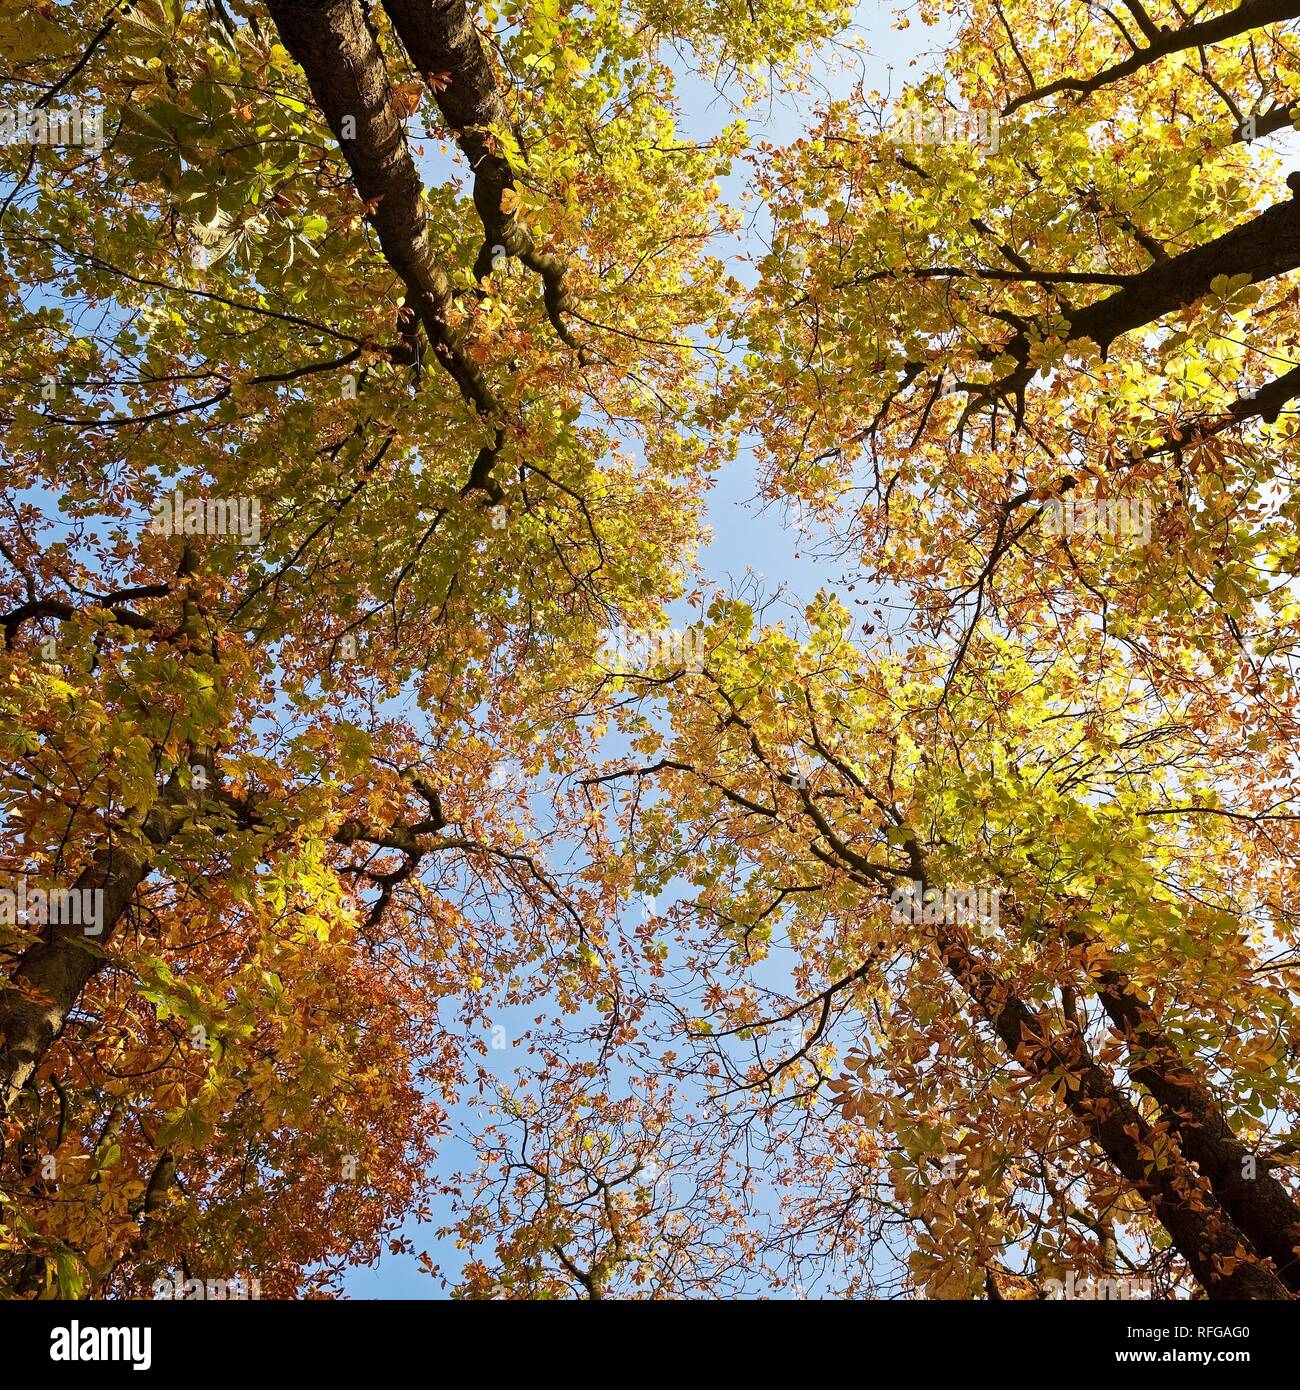 Ver a los árboles en el follaje de otoño, Witten, área de Ruhr, Renania del Norte-Westfalia, Alemania Foto de stock